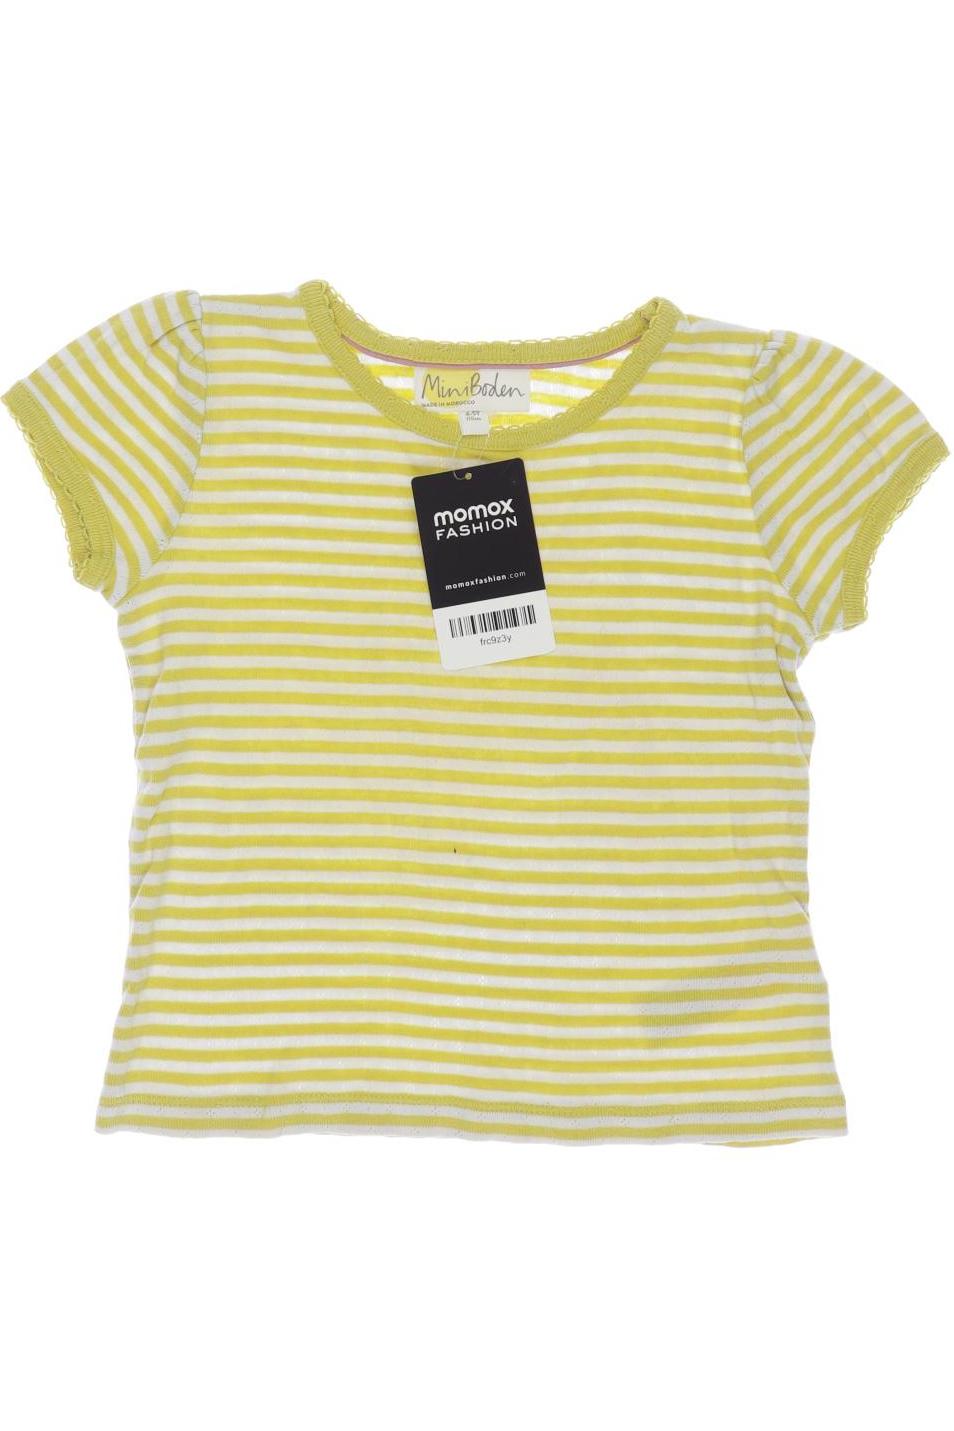 Mini Boden Damen T-Shirt, gelb, Gr. 110 von Mini Boden